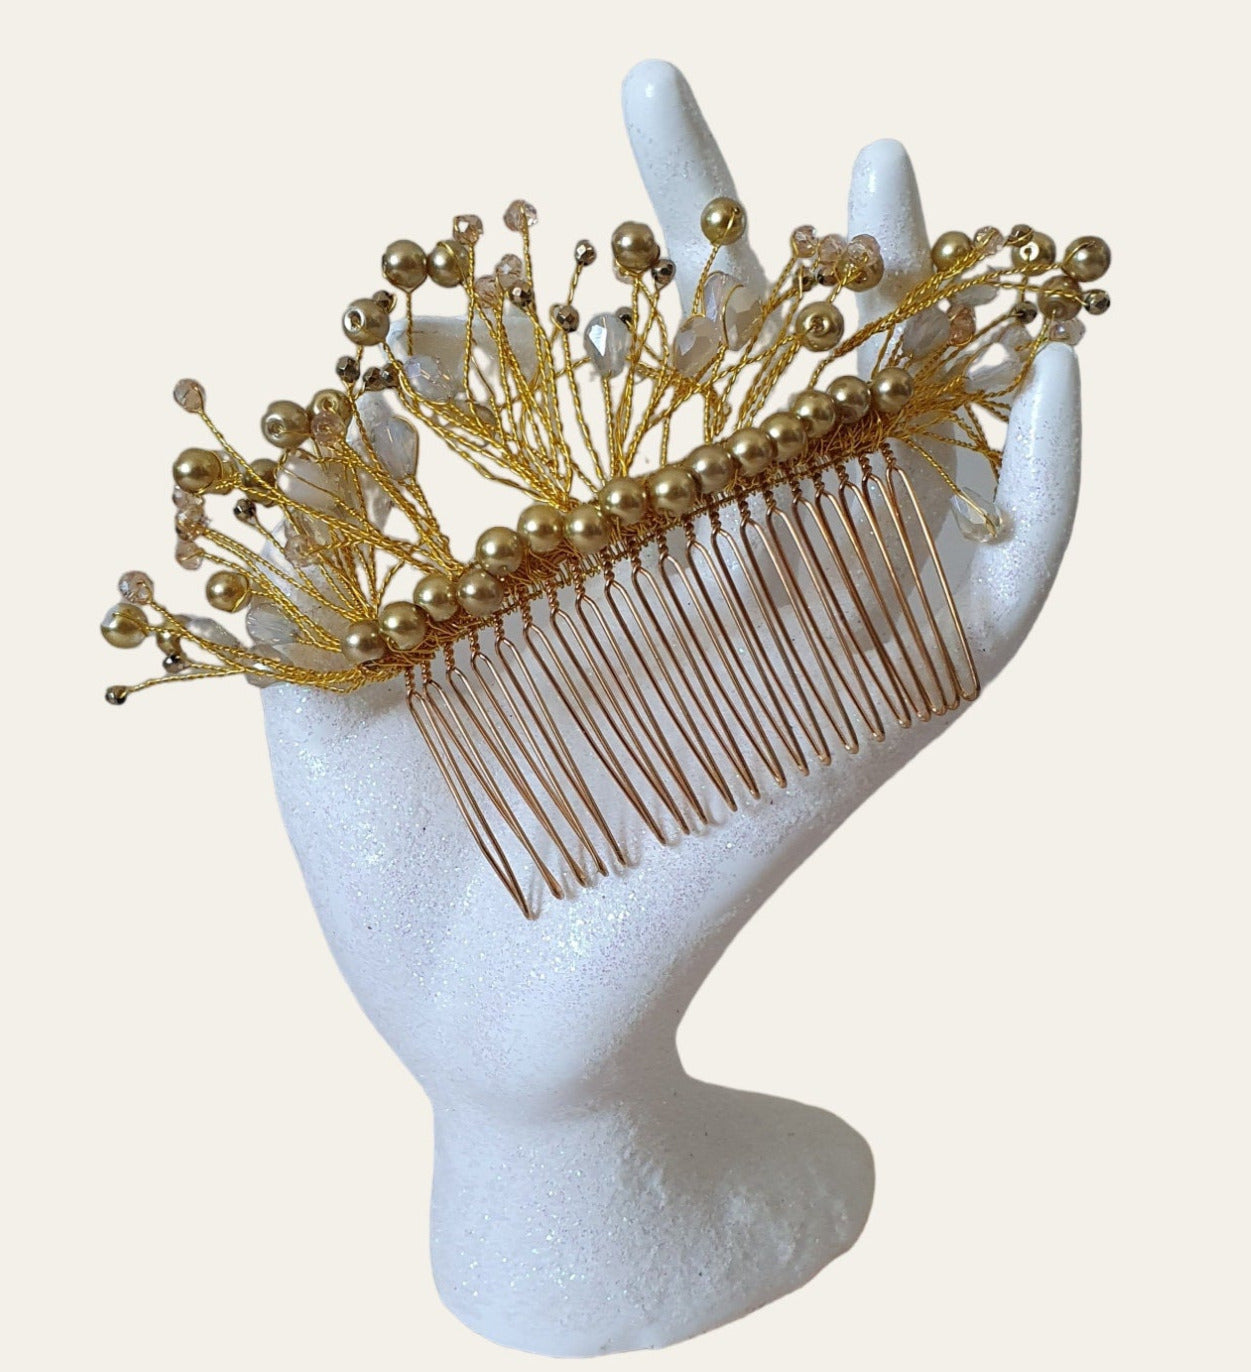 Handgemaakte bruidskam met parels en druppelstenen - Elegant haaraccessoire voor bruiloften, bruiloft en feesten, goudkleurige metalen kam